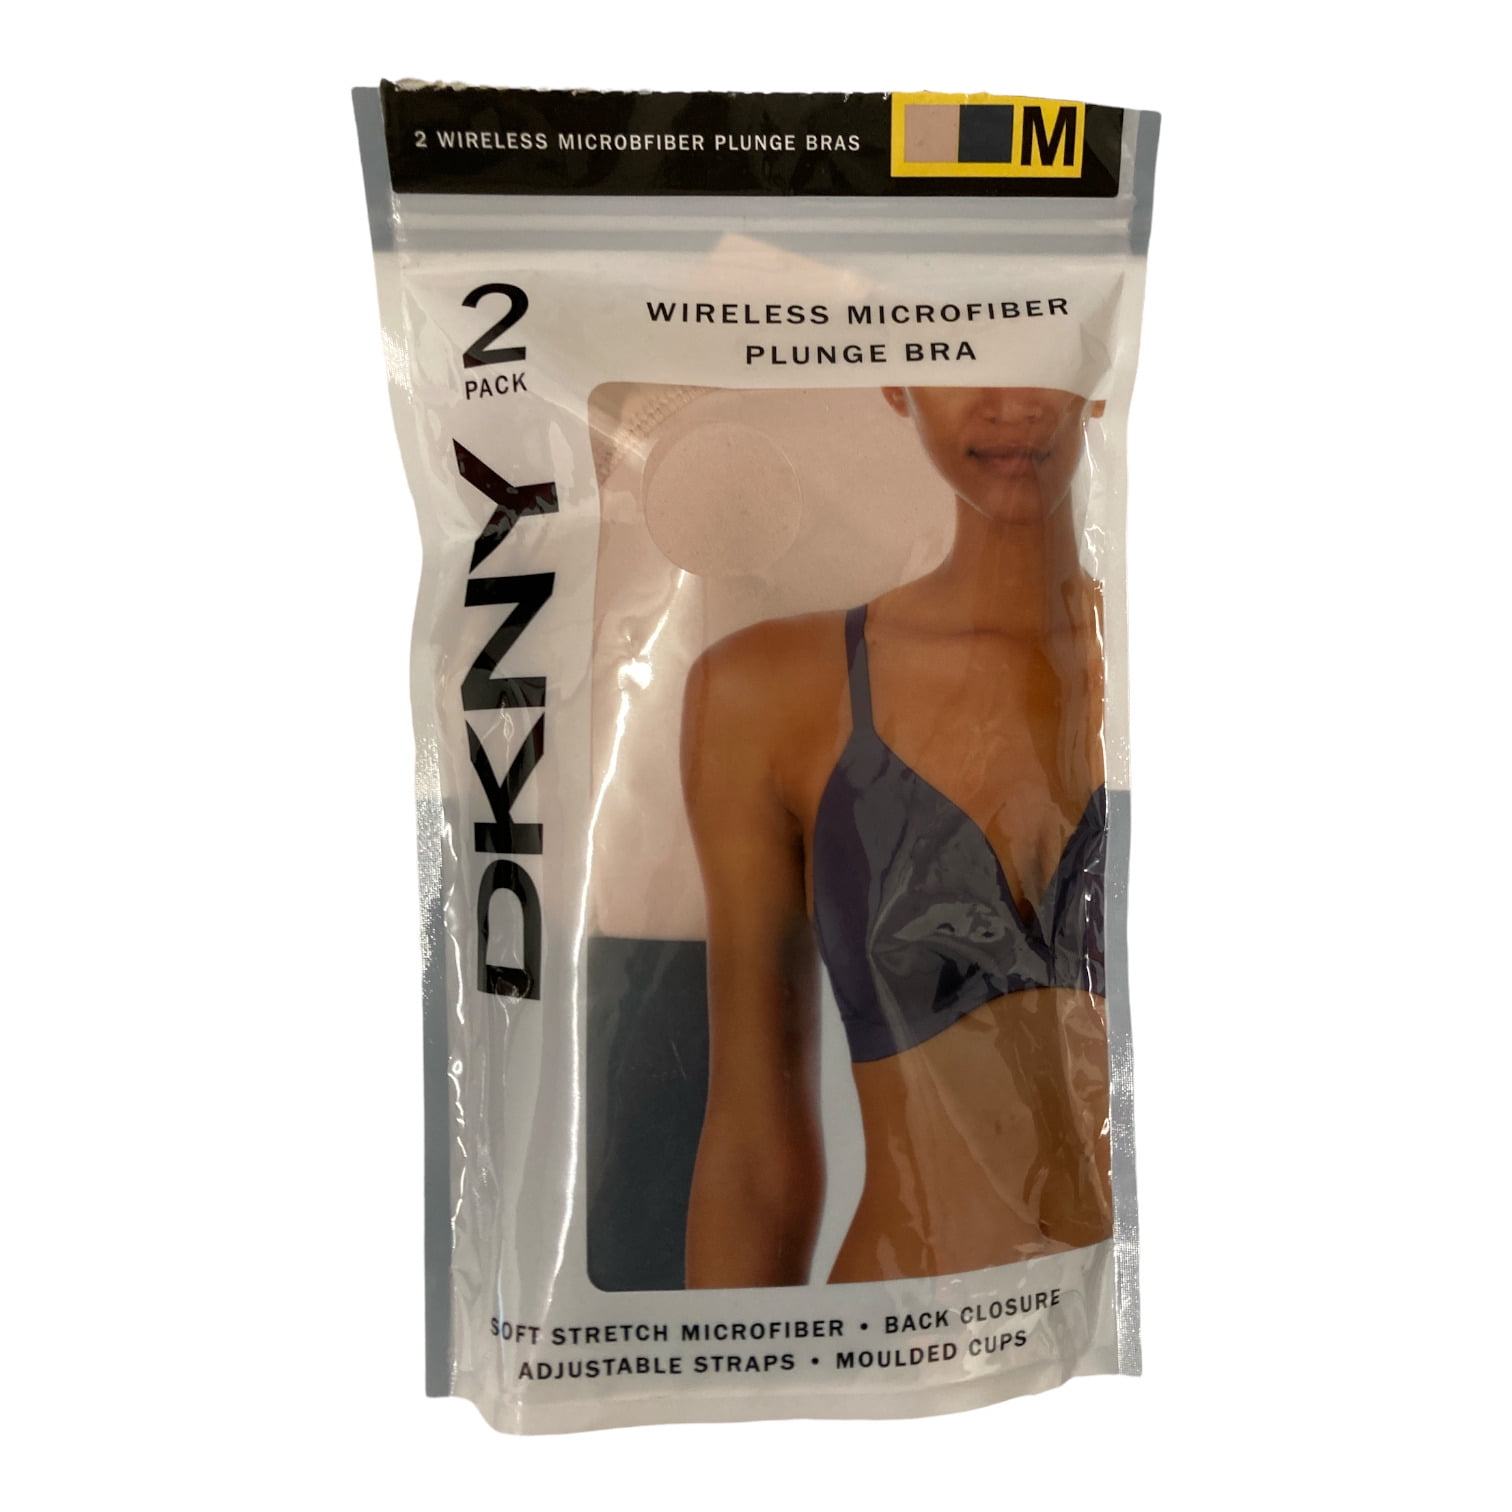 DKNY Women's Wireless Soft Stretch Microfiber Plunge Bra (Ink/Sand